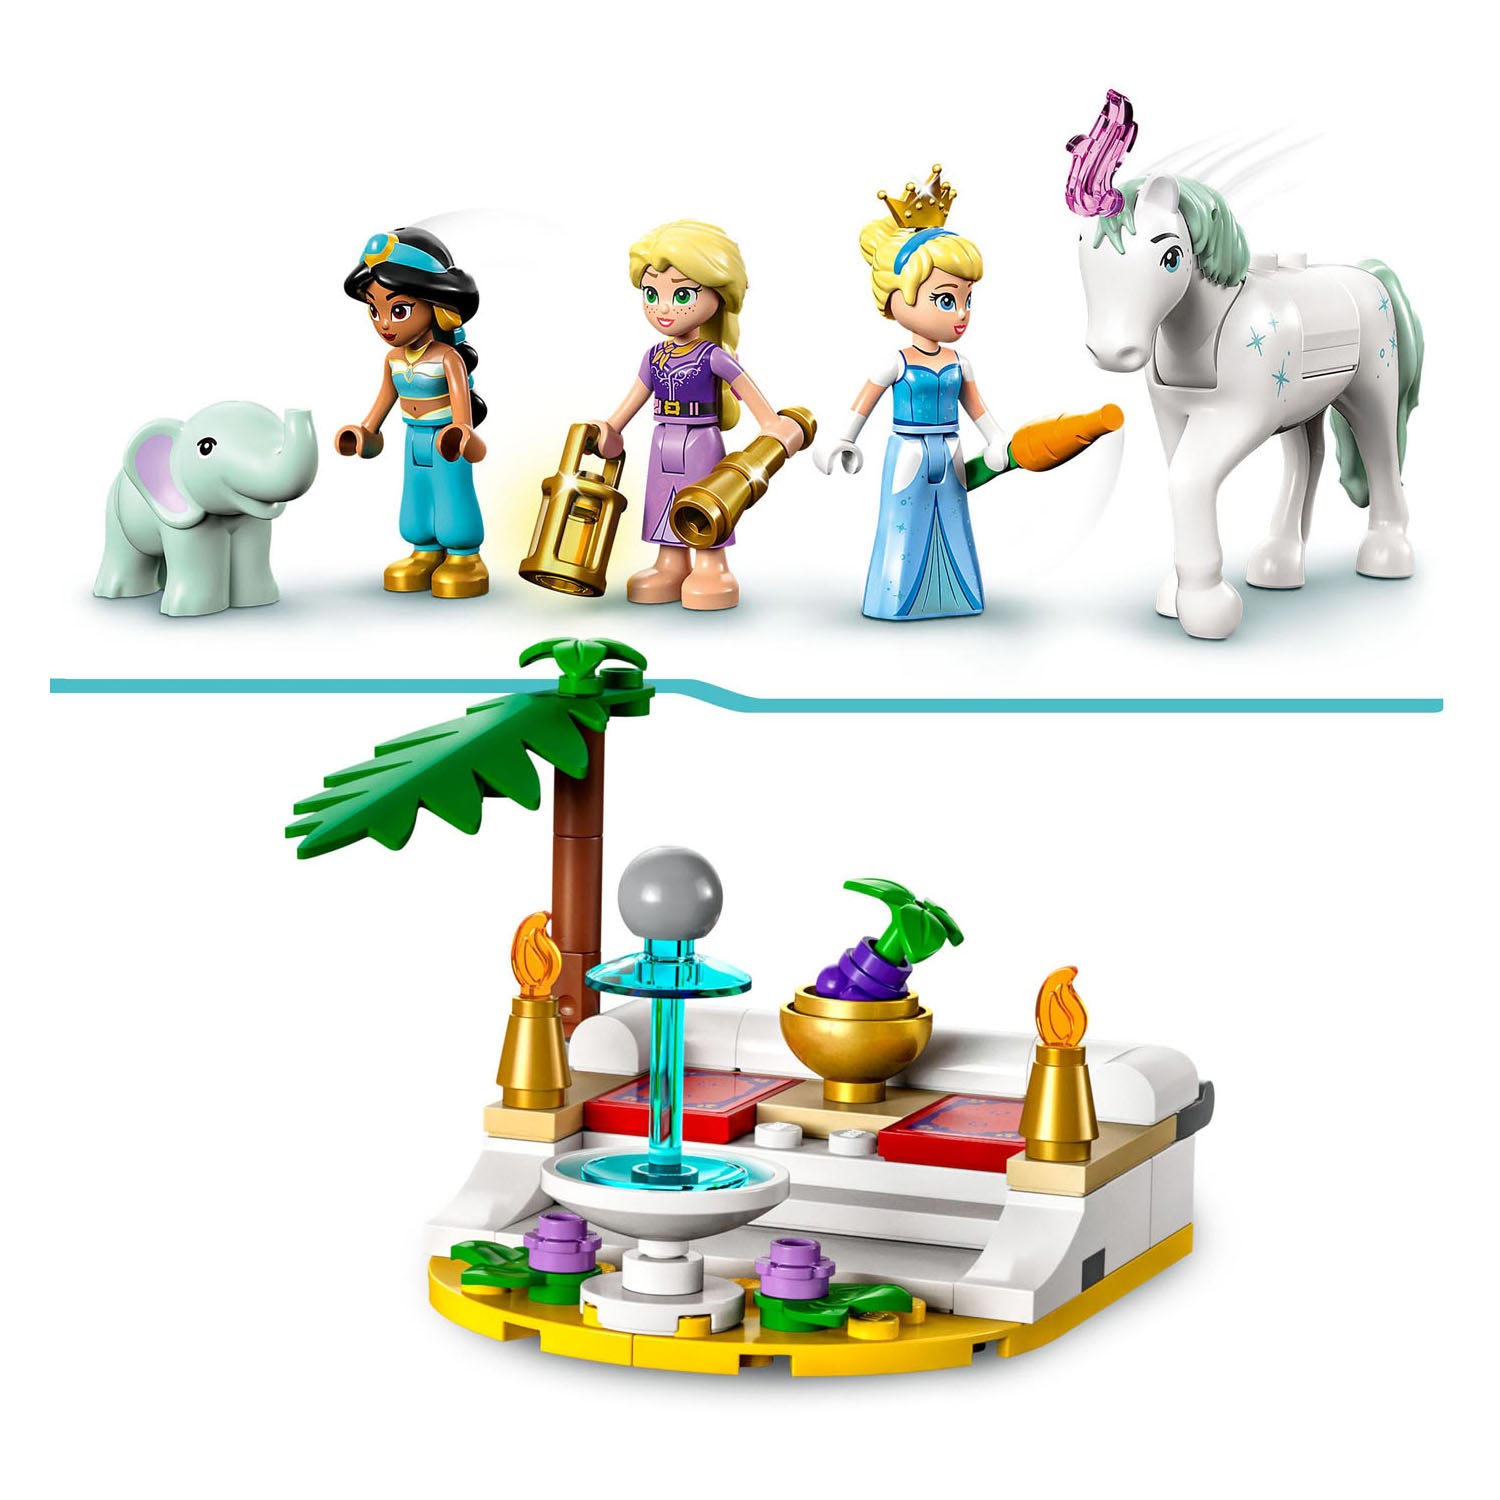 LEGO Disney 43216 Die verzauberte Reise der Prinzessin